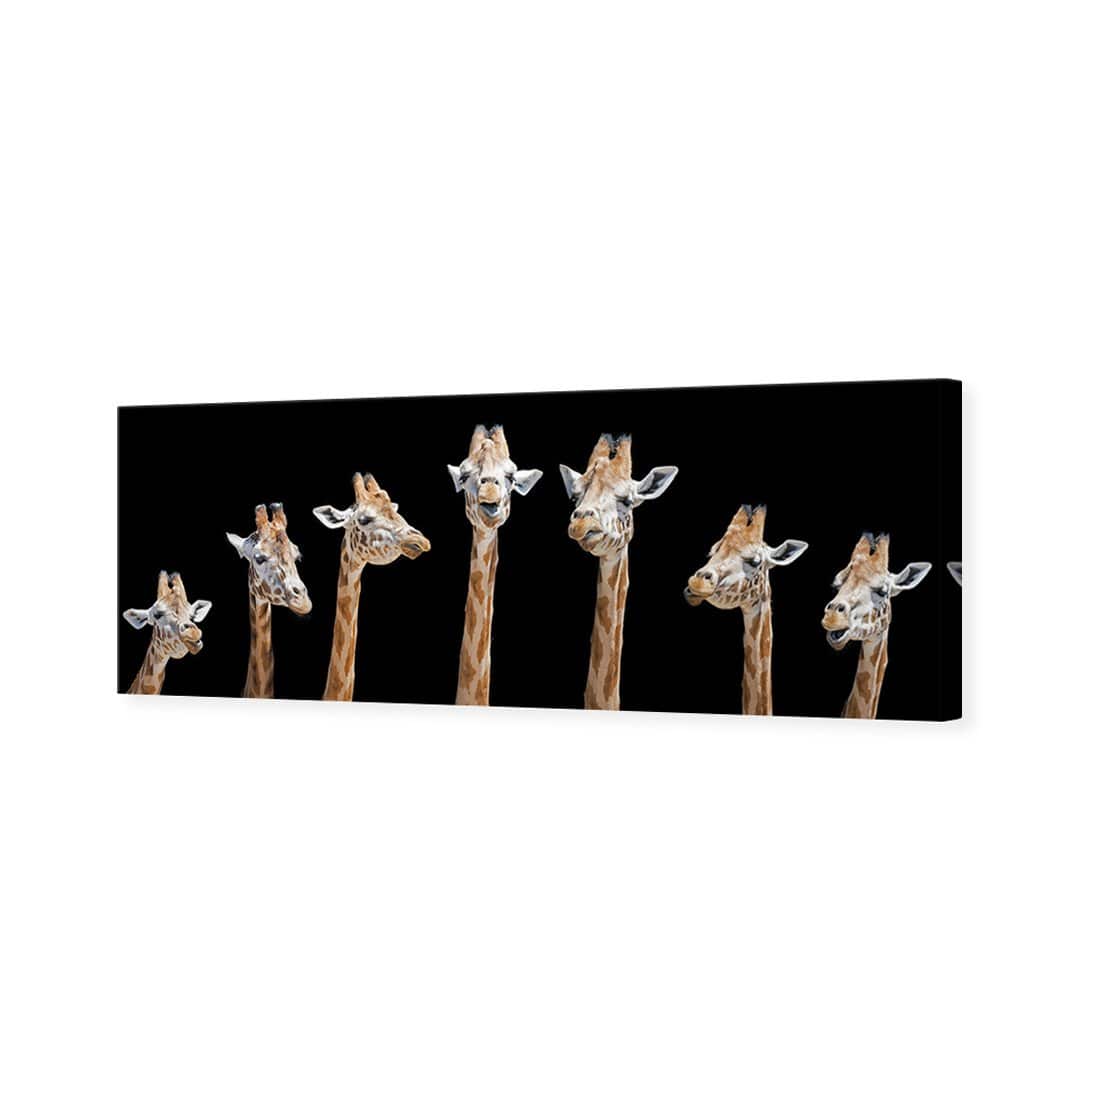 Laughing Giraffes Canvas Art-Canvas-Wall Art Designs-60x20cm-Canvas - No Frame-Wall Art Designs